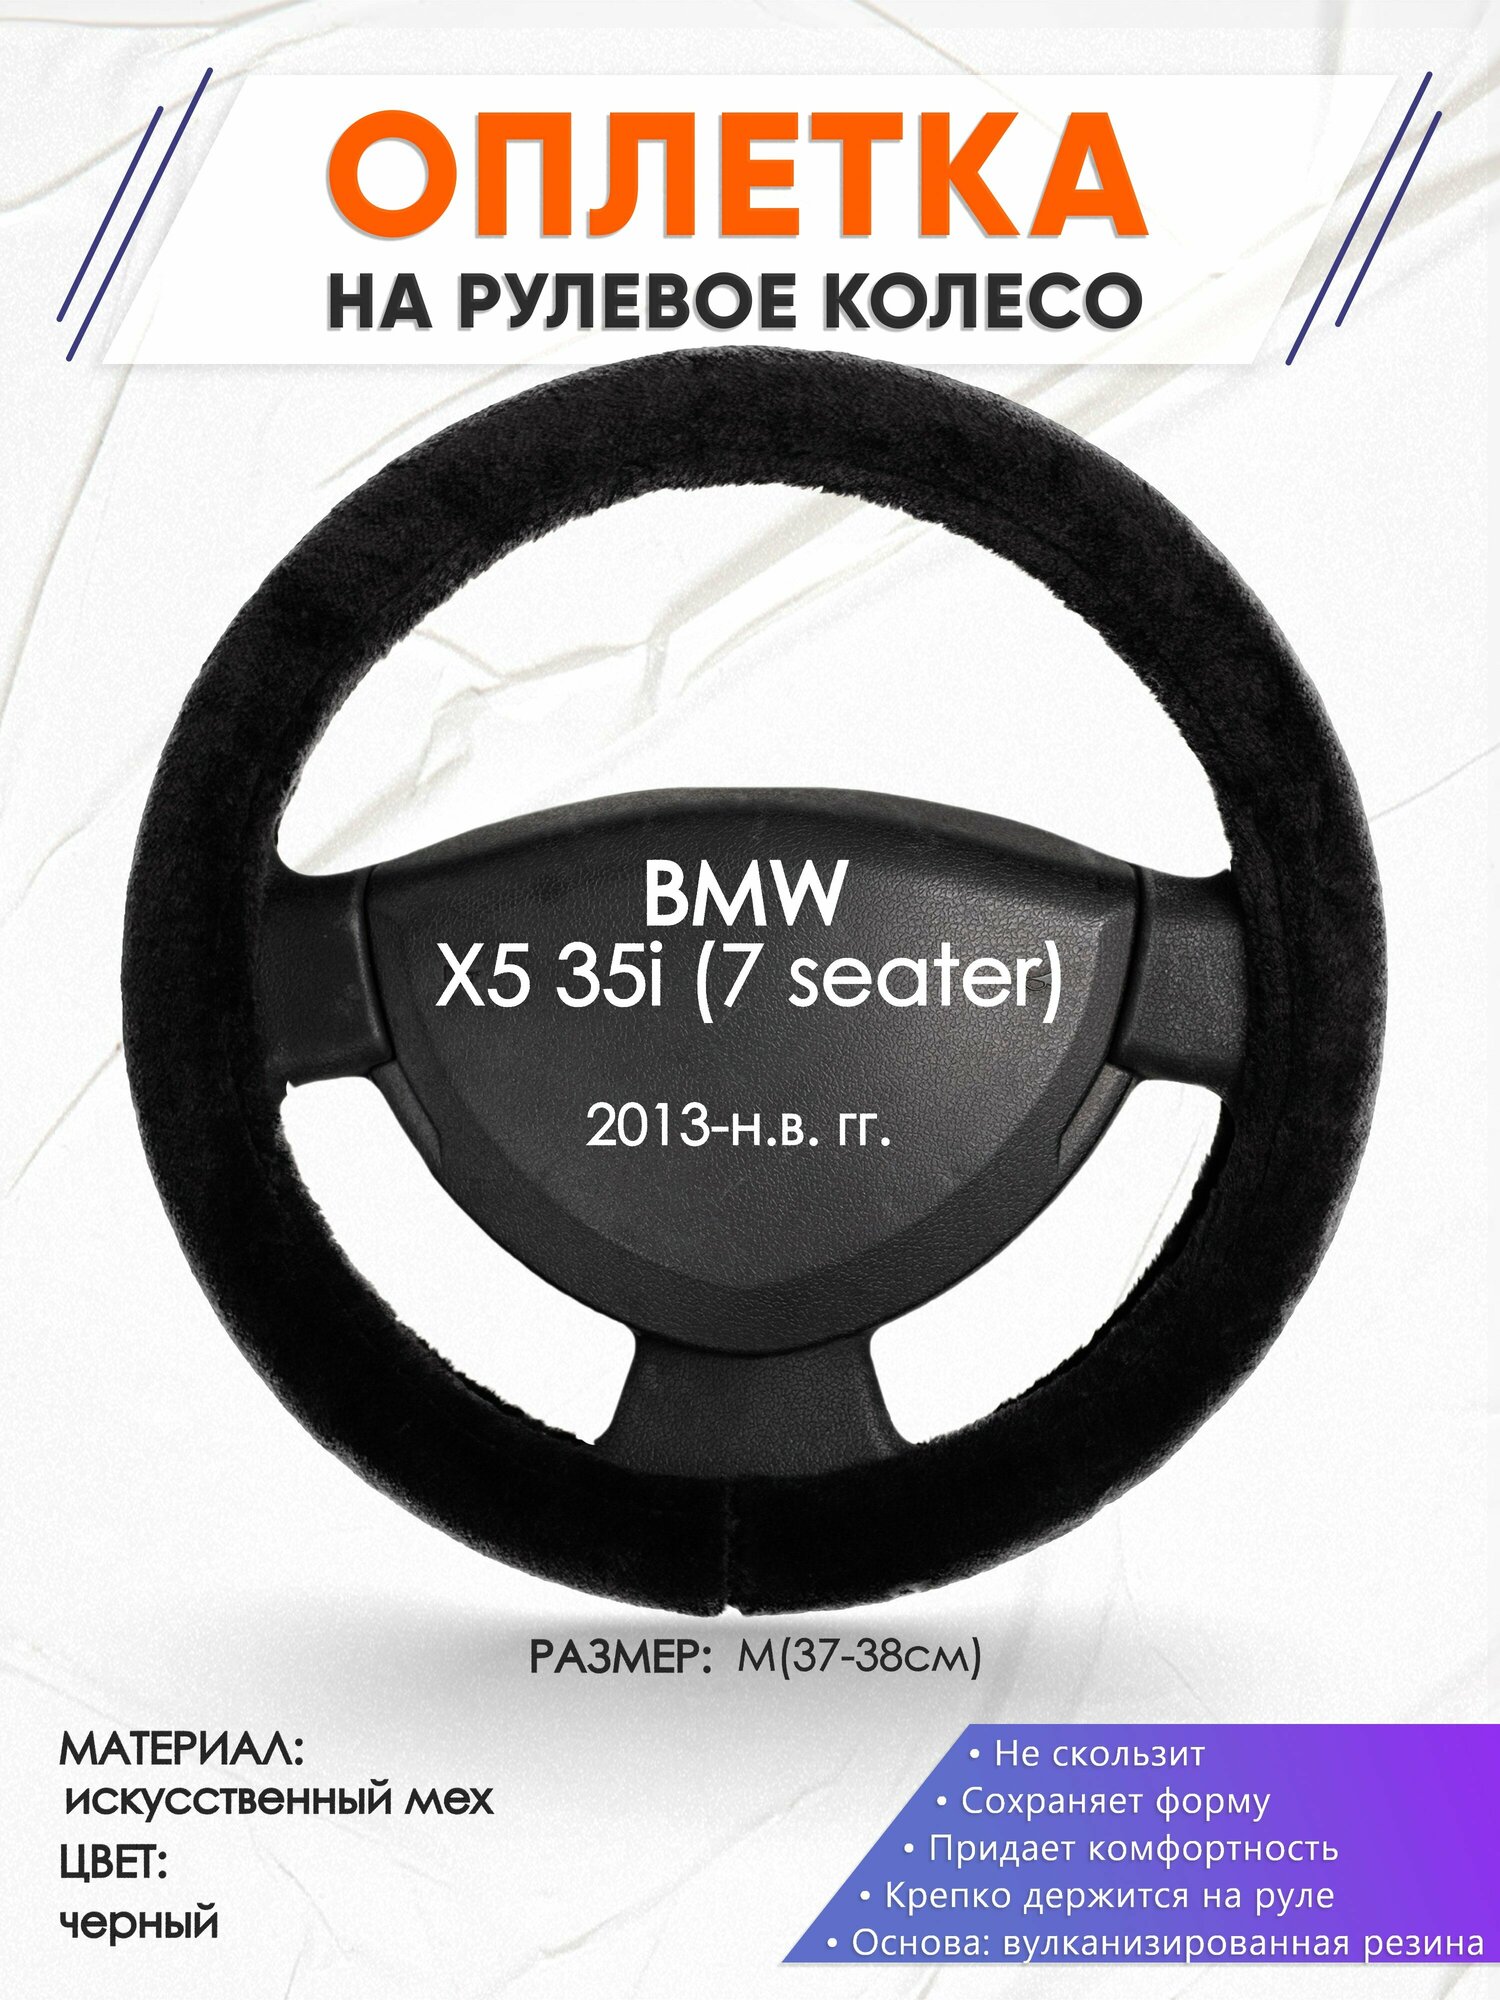 Оплетка наруль для BMW X5 35i (7 seater)(Бмв икс5) 2013-н. в. годов выпуска, размер M(37-38см), Искусственный мех 45